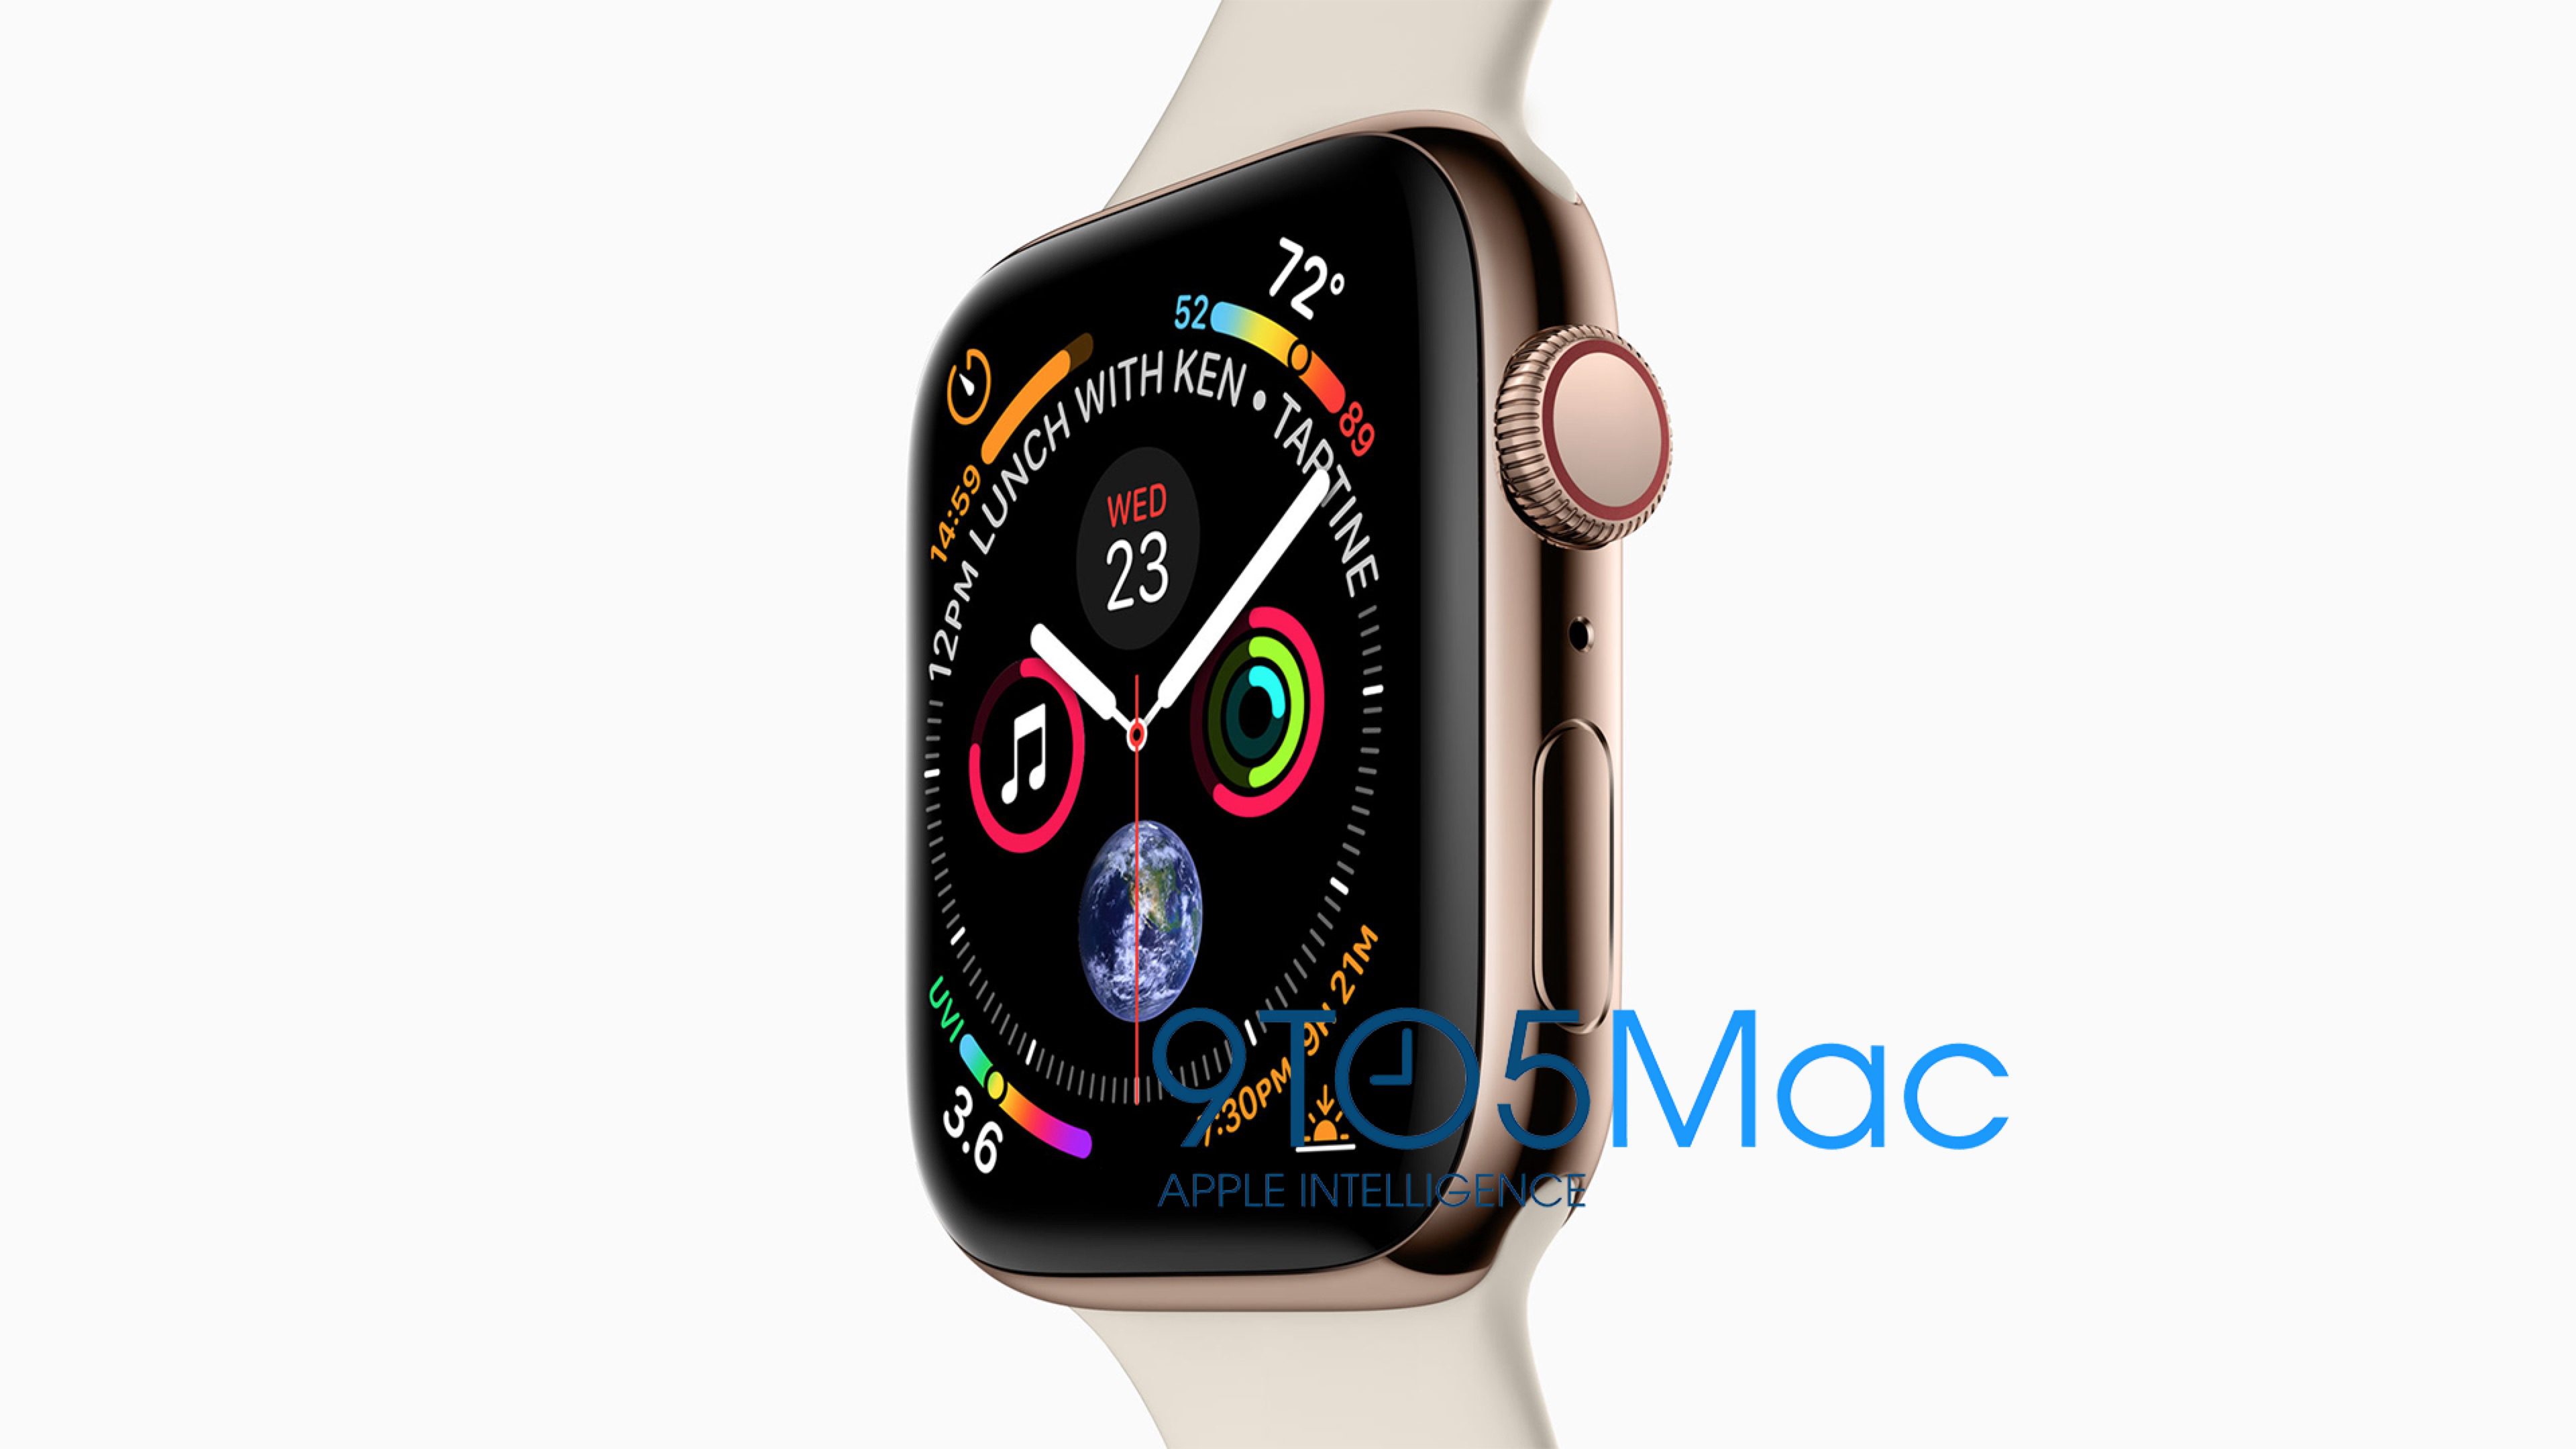 Kiderült, hogy milyen méretekben és színekben érkeznek az Apple Watch-ok